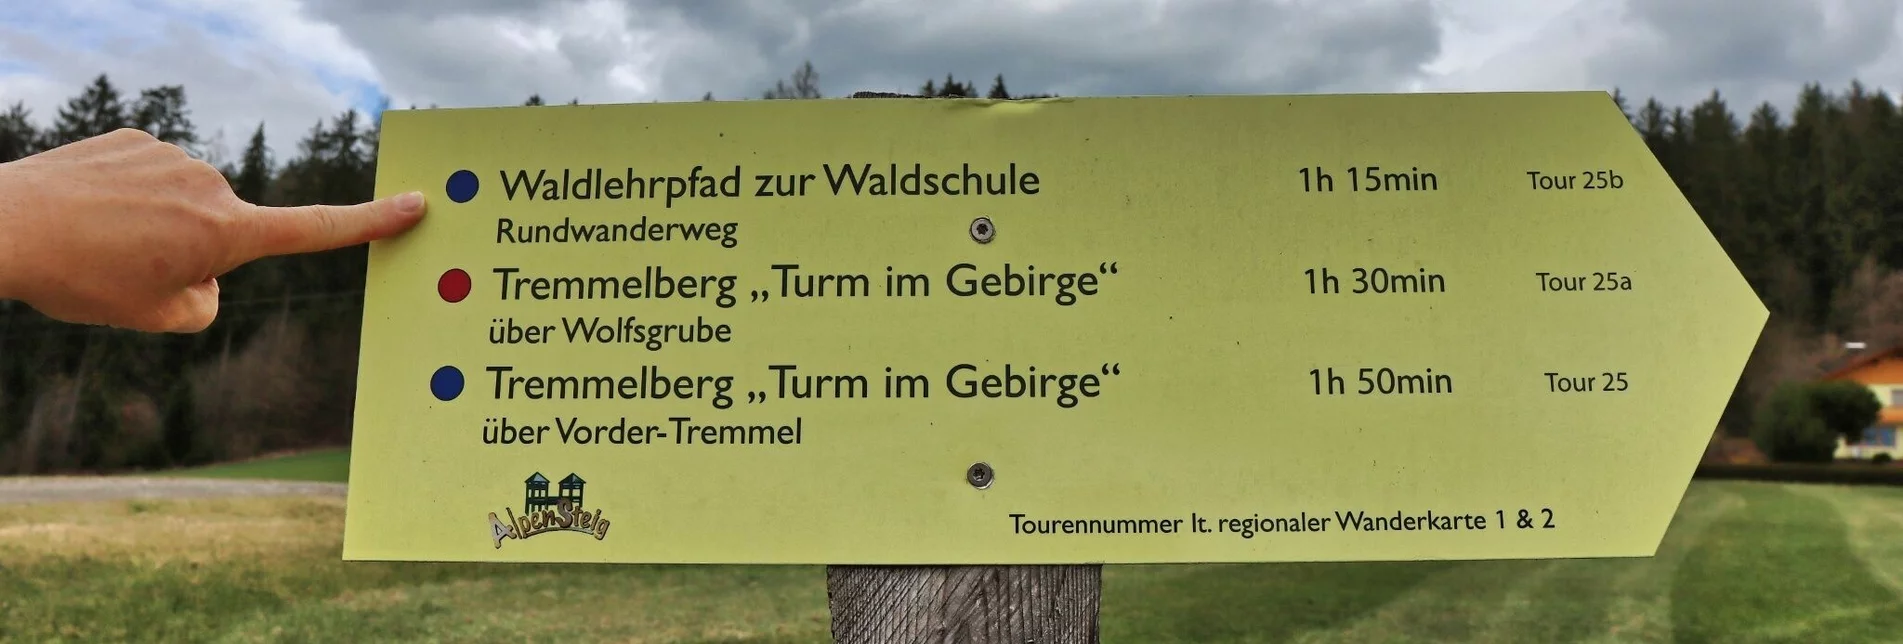 Themen- und Lehrpfad Waldlehrpfad zur Waldschule - Touren-Impression #1 | © Weges OG